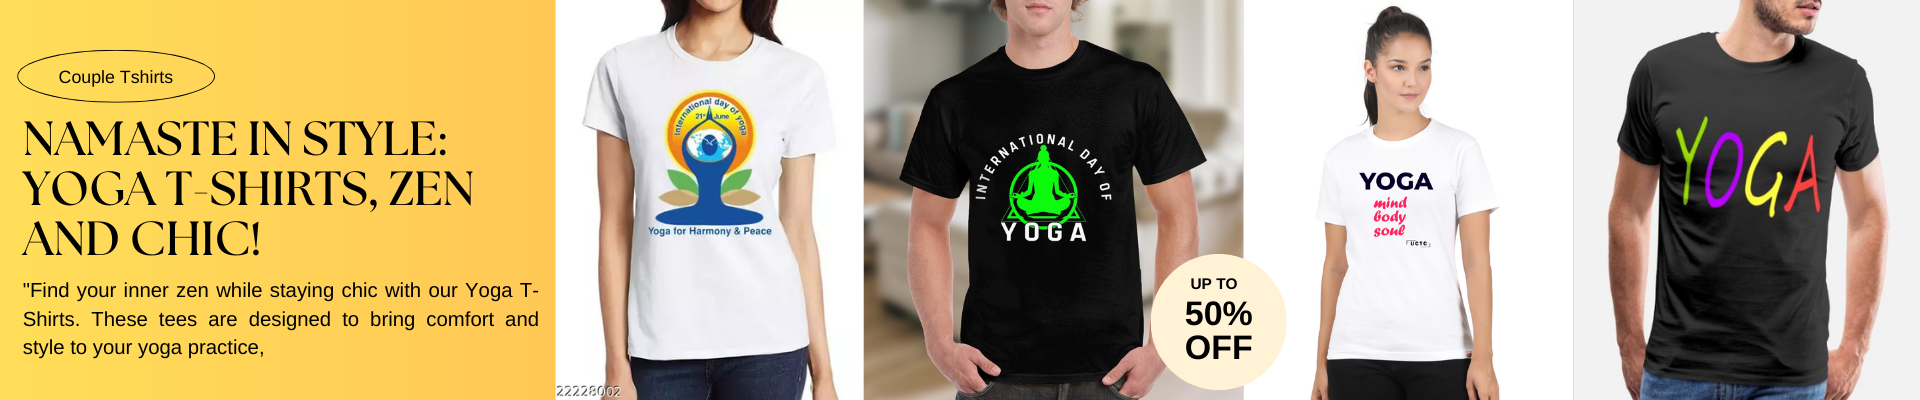 yoga tshirt, yoga tshirt for ladies, yoga t shirts mens, yoga t shirt design, yoga t shirts women's